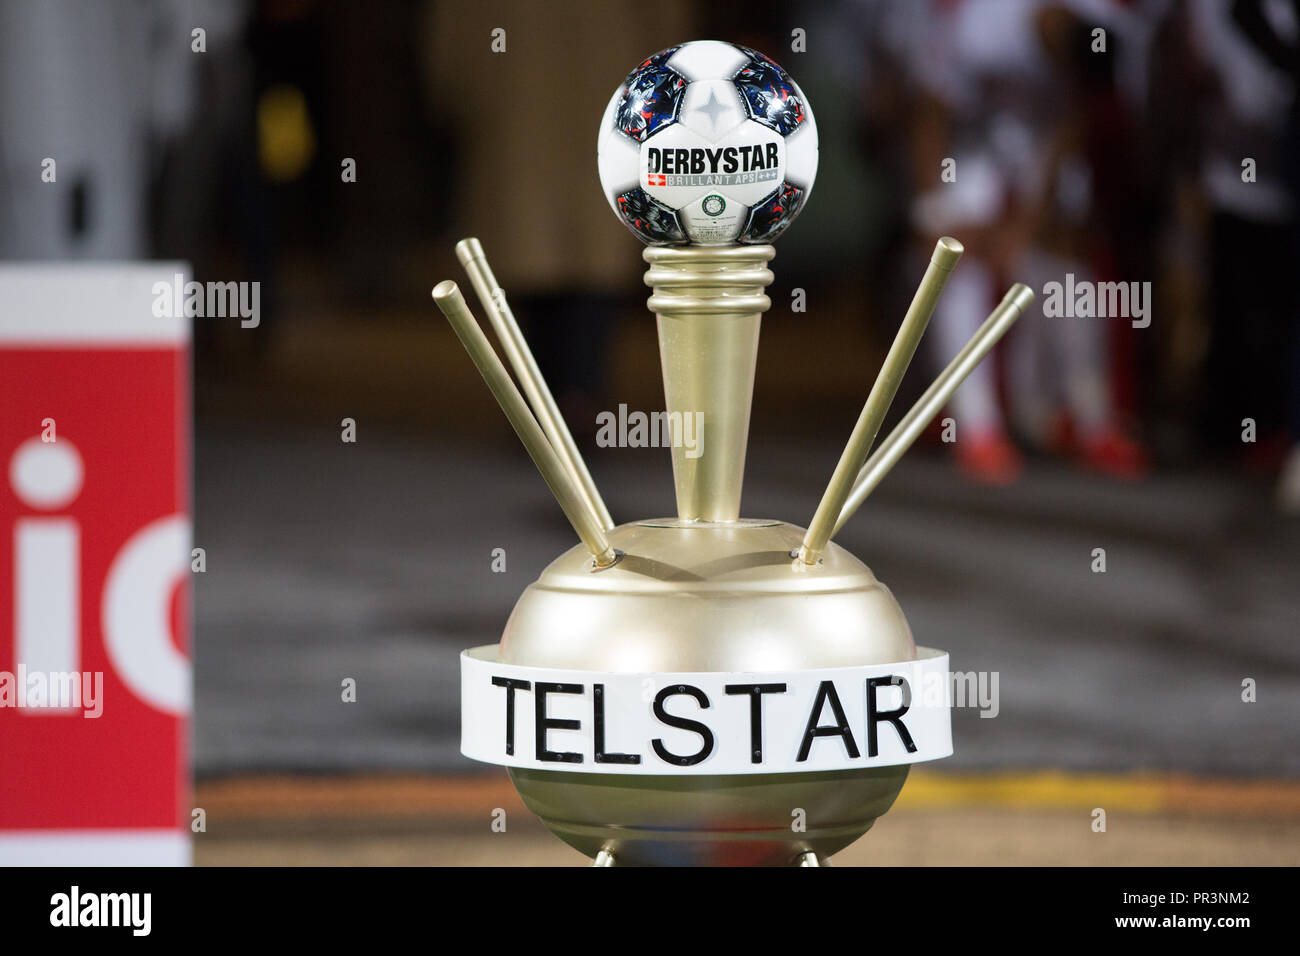 La sfera del match in Telstar stadio prima di una partita. Foto Stock